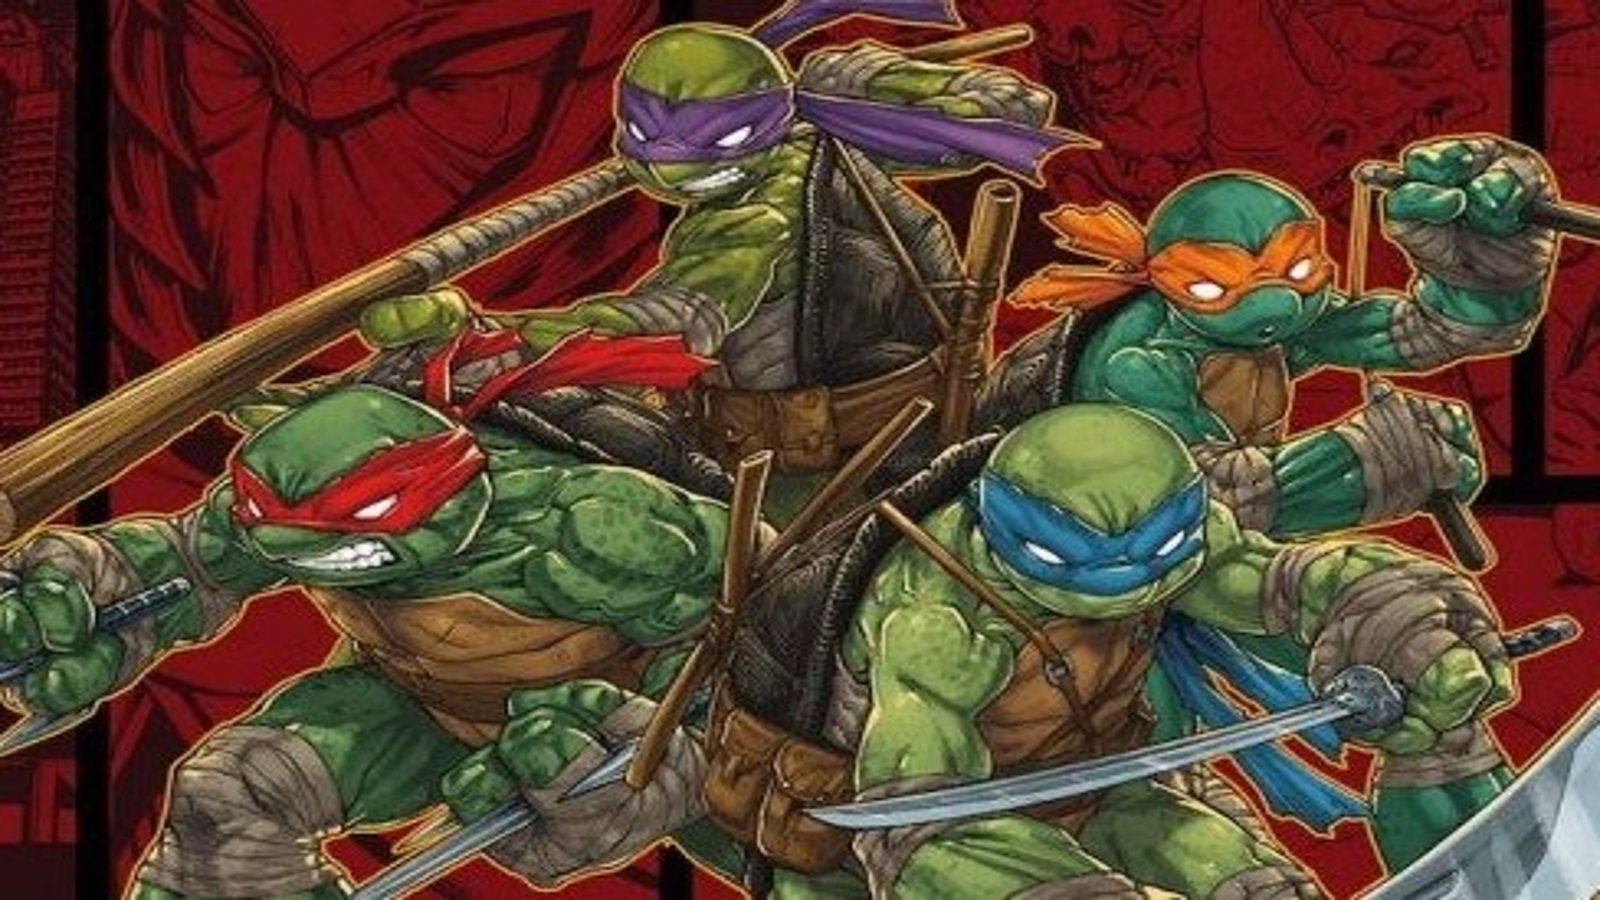  Teenage Mutant Ninja Turtles : Activision Inc: Video Games